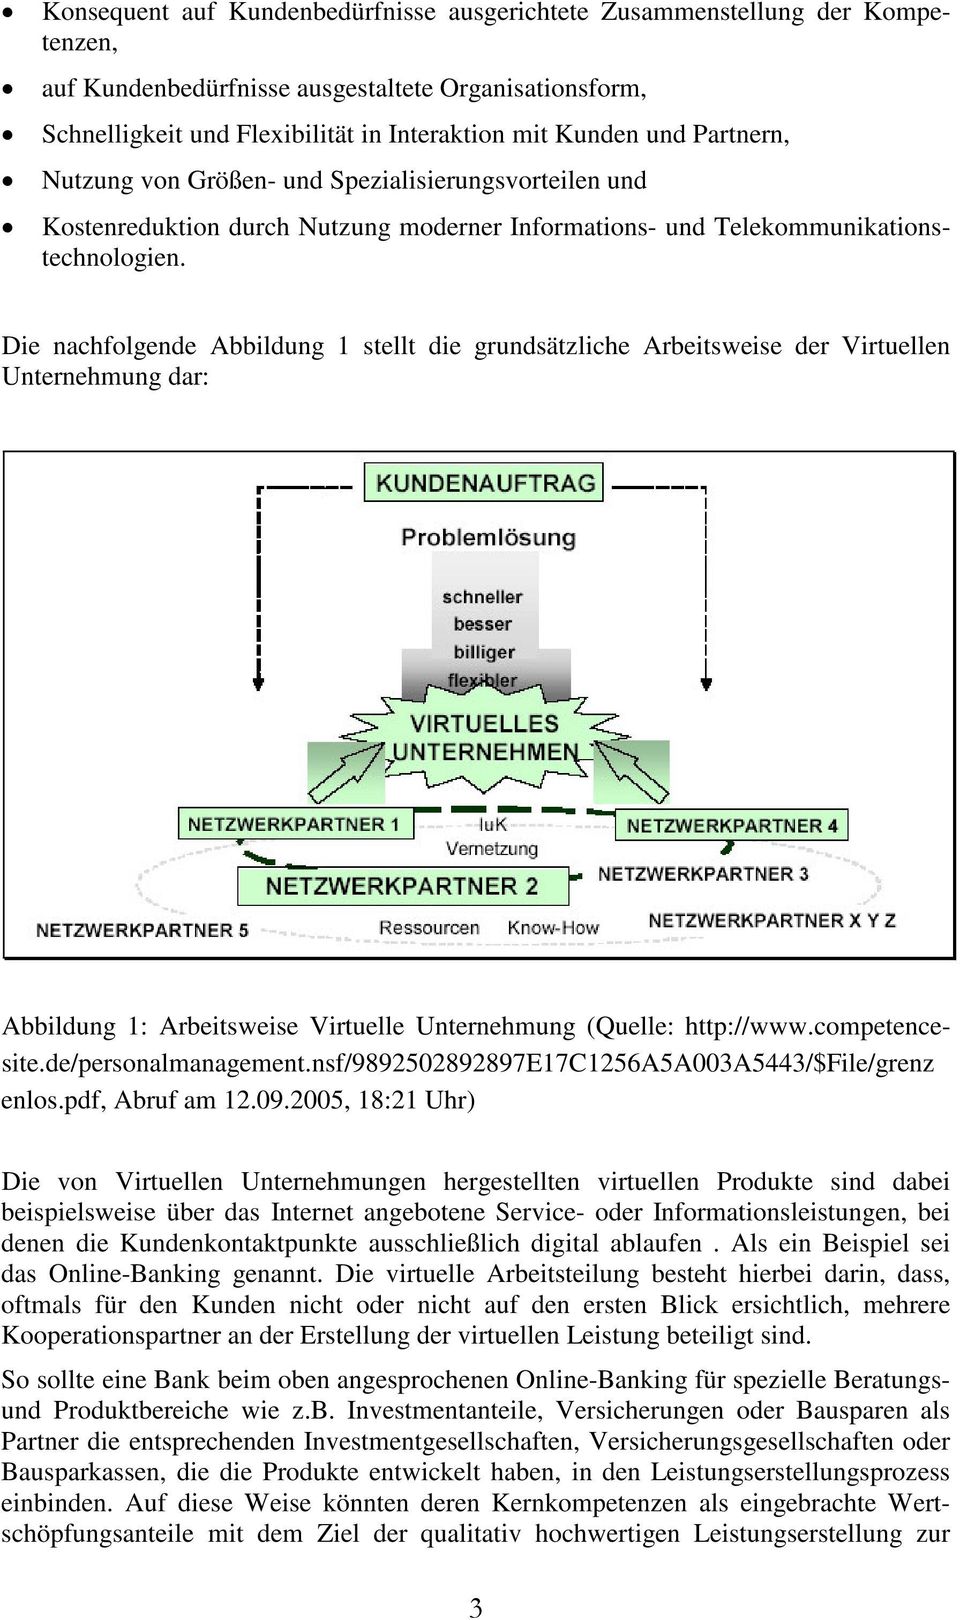 Die nachfolgende Abbildung 1 stellt die grundsätzliche Arbeitsweise der Virtuellen Unternehmung dar: Abbildung 1: Arbeitsweise Virtuelle Unternehmung (Quelle: http://www.competencesite.